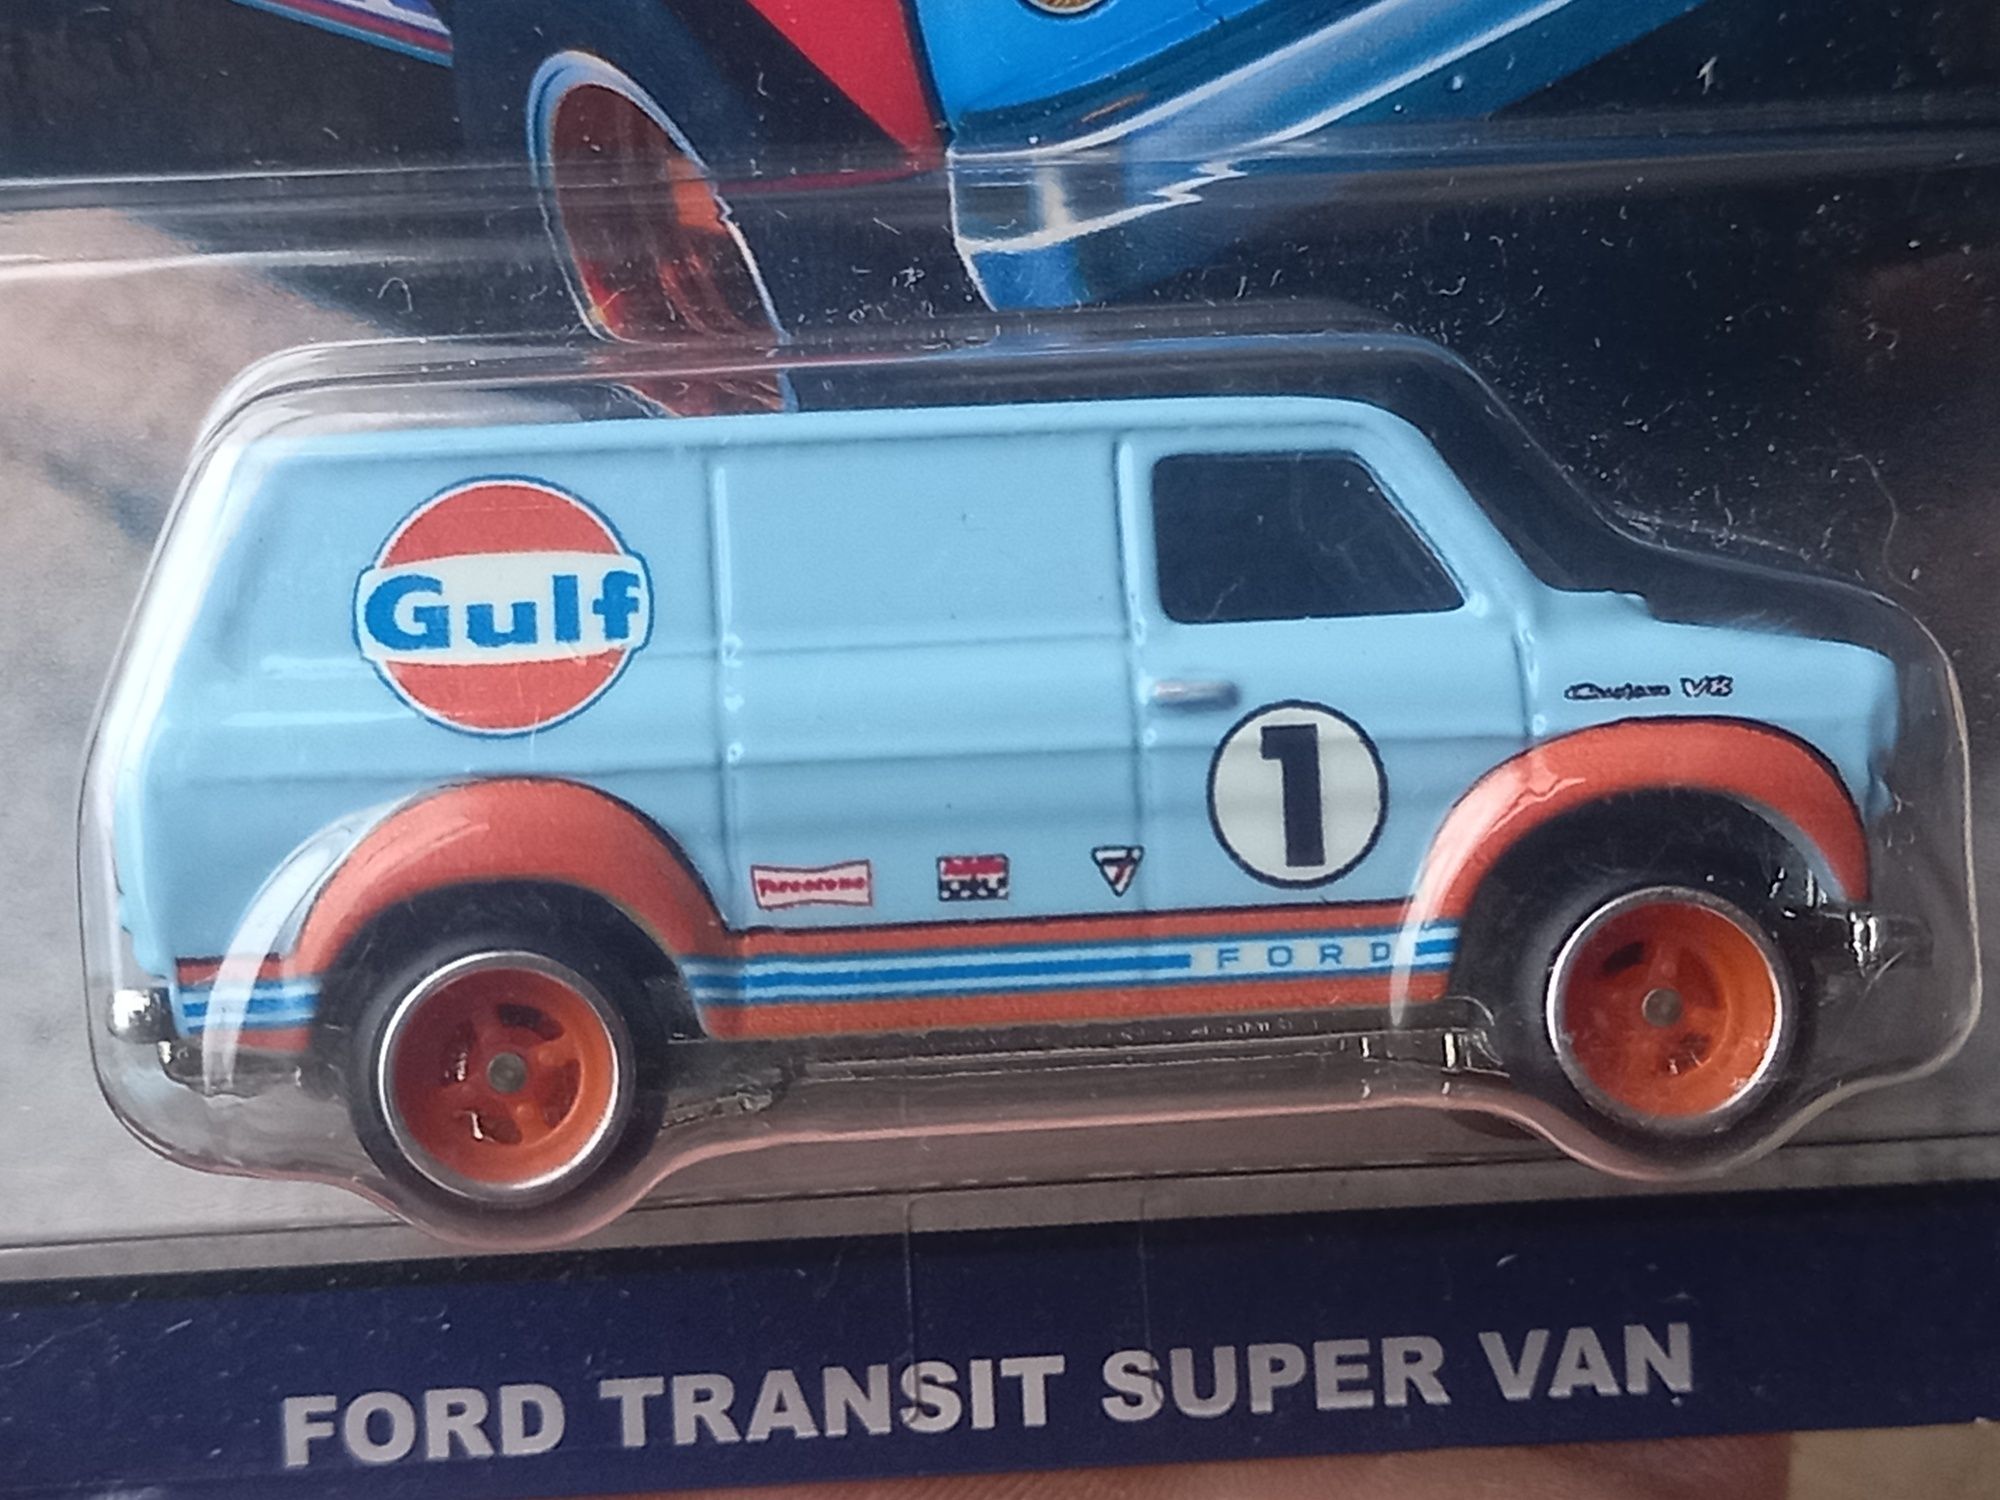 Ford transit super van (rodas de borracha)